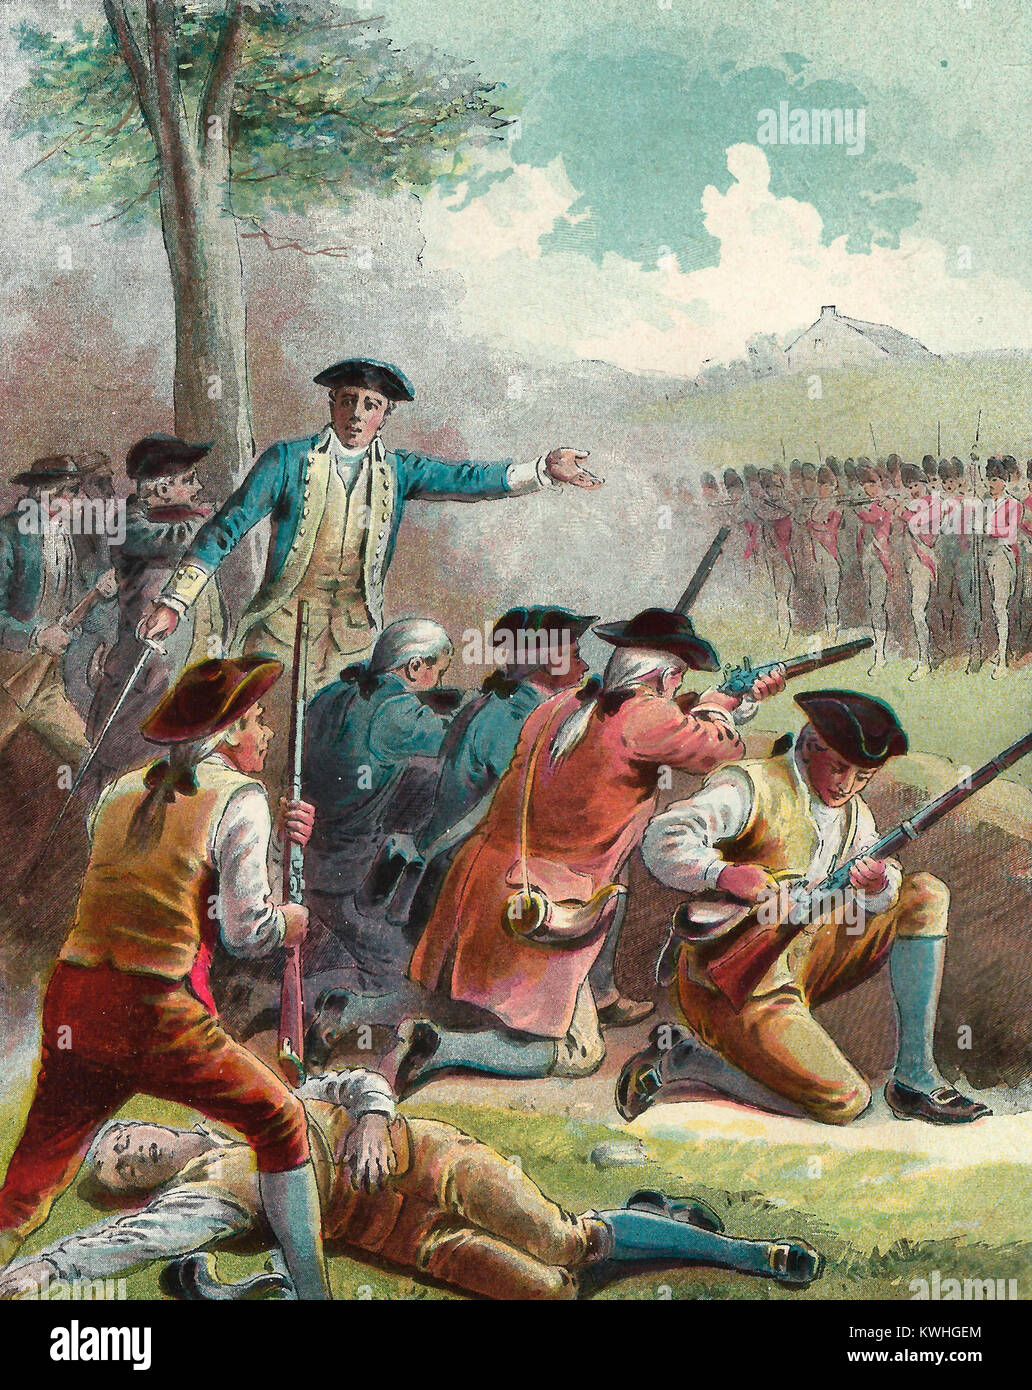 Angriff auf die rotröcke nach ihrer Rückkehr nach Boston - Schlacht von Concord - Amerikanische Revolution, 1775 Stockfoto